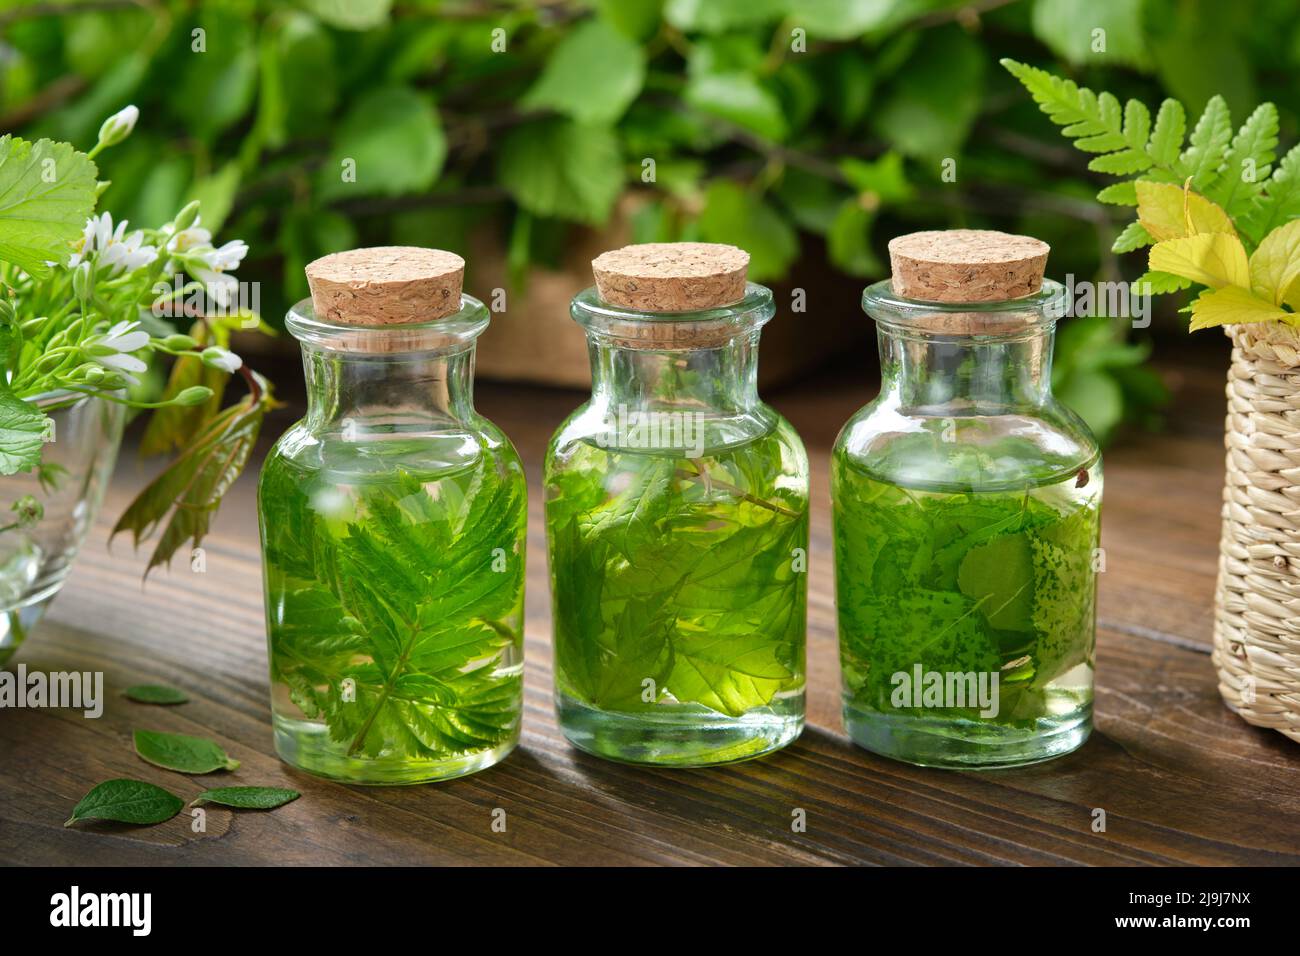 Botellas de aceite esencial o infusión de hierbas medicinales, plantas medicinales curativas. Medicina herbaria alternativa. Foto de stock